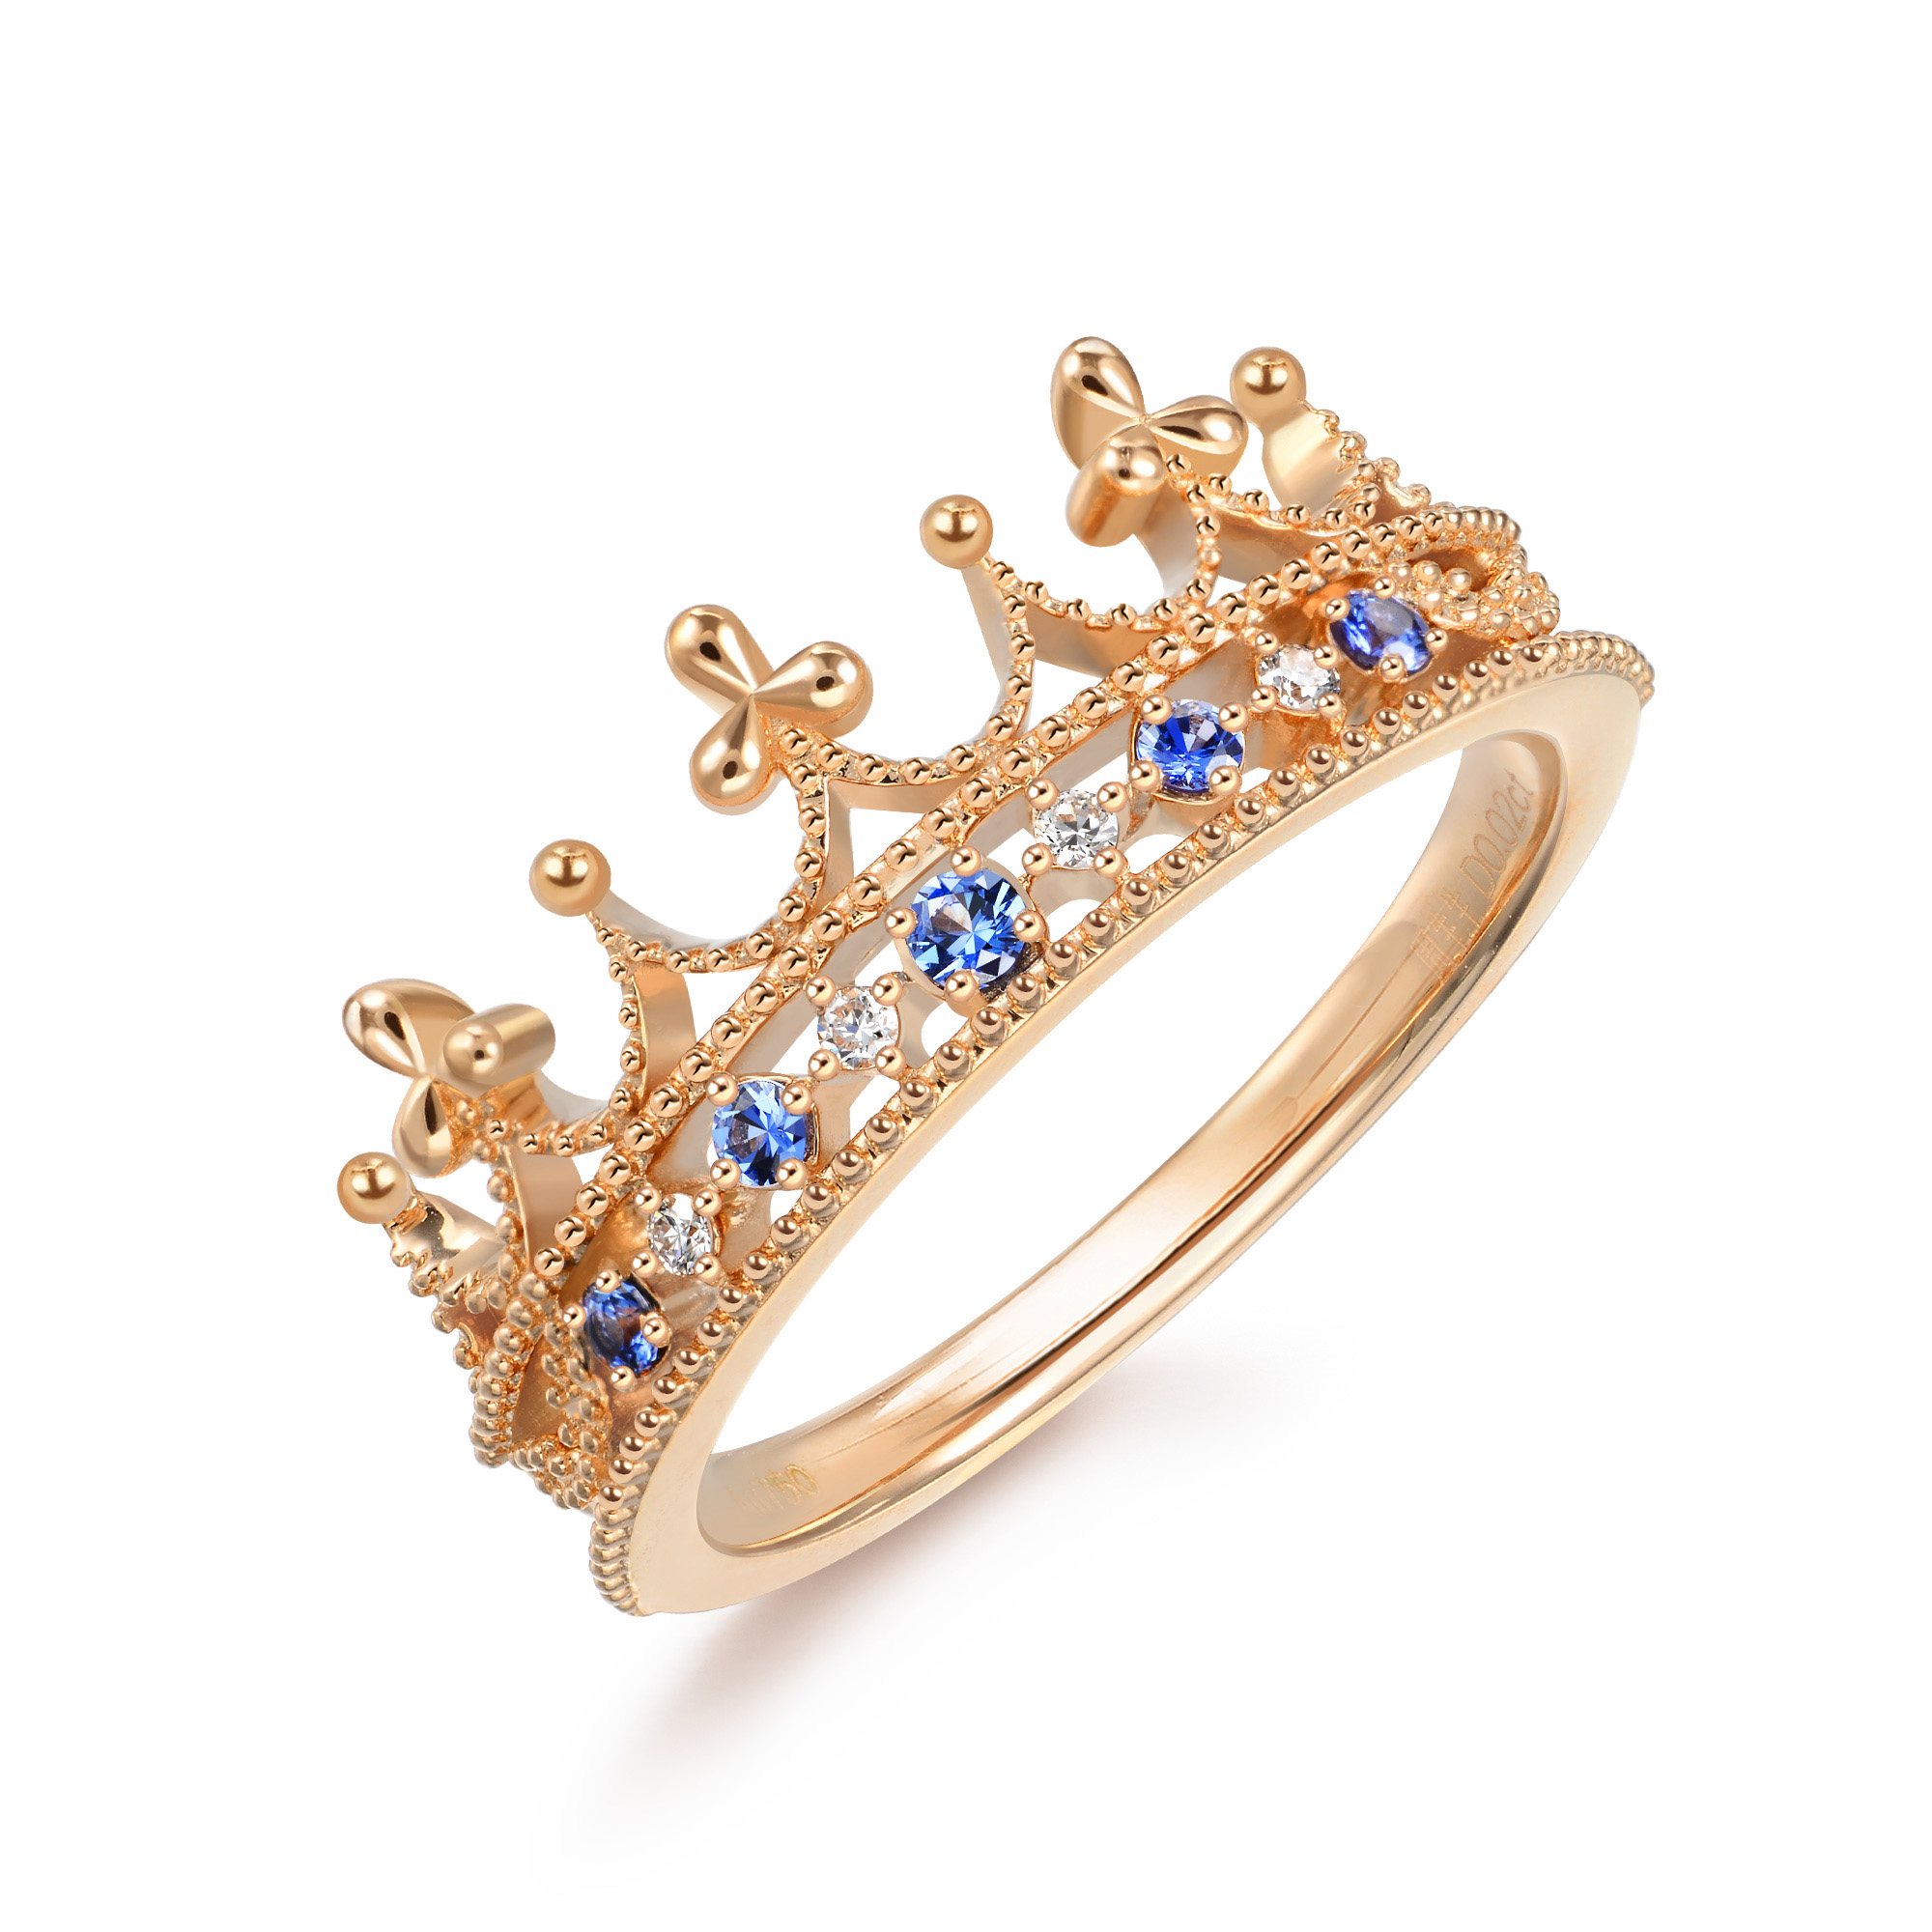 创始人艾伯特亲王亲自为维多利亚女王设计的爱情信物蓝宝石钻石皇冠为